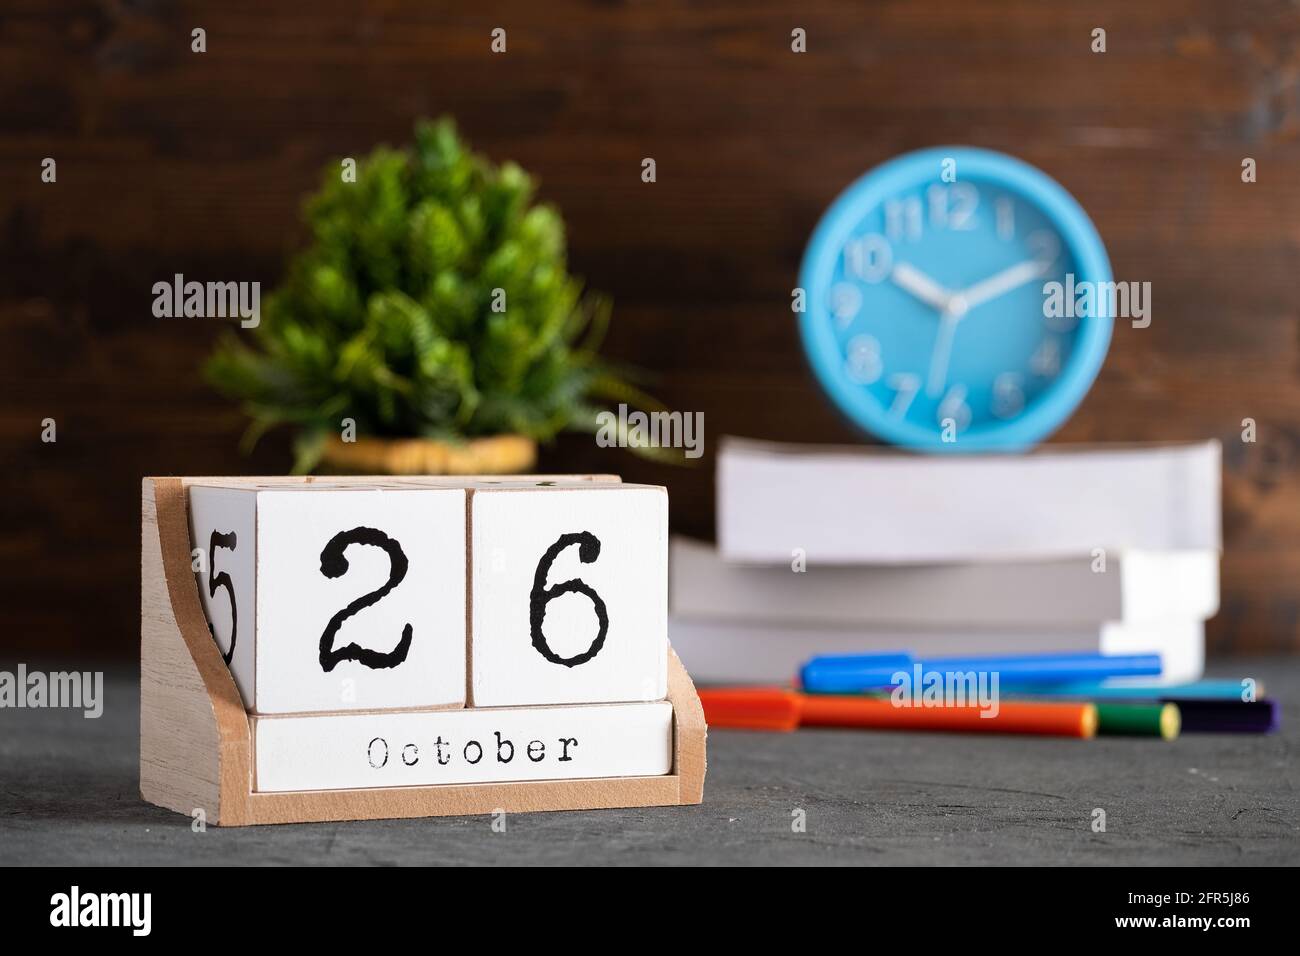 Oktober. Oktober 26 Holzwürfelkalender mit unscharfen Objekten auf dem Hintergrund. Stockfoto